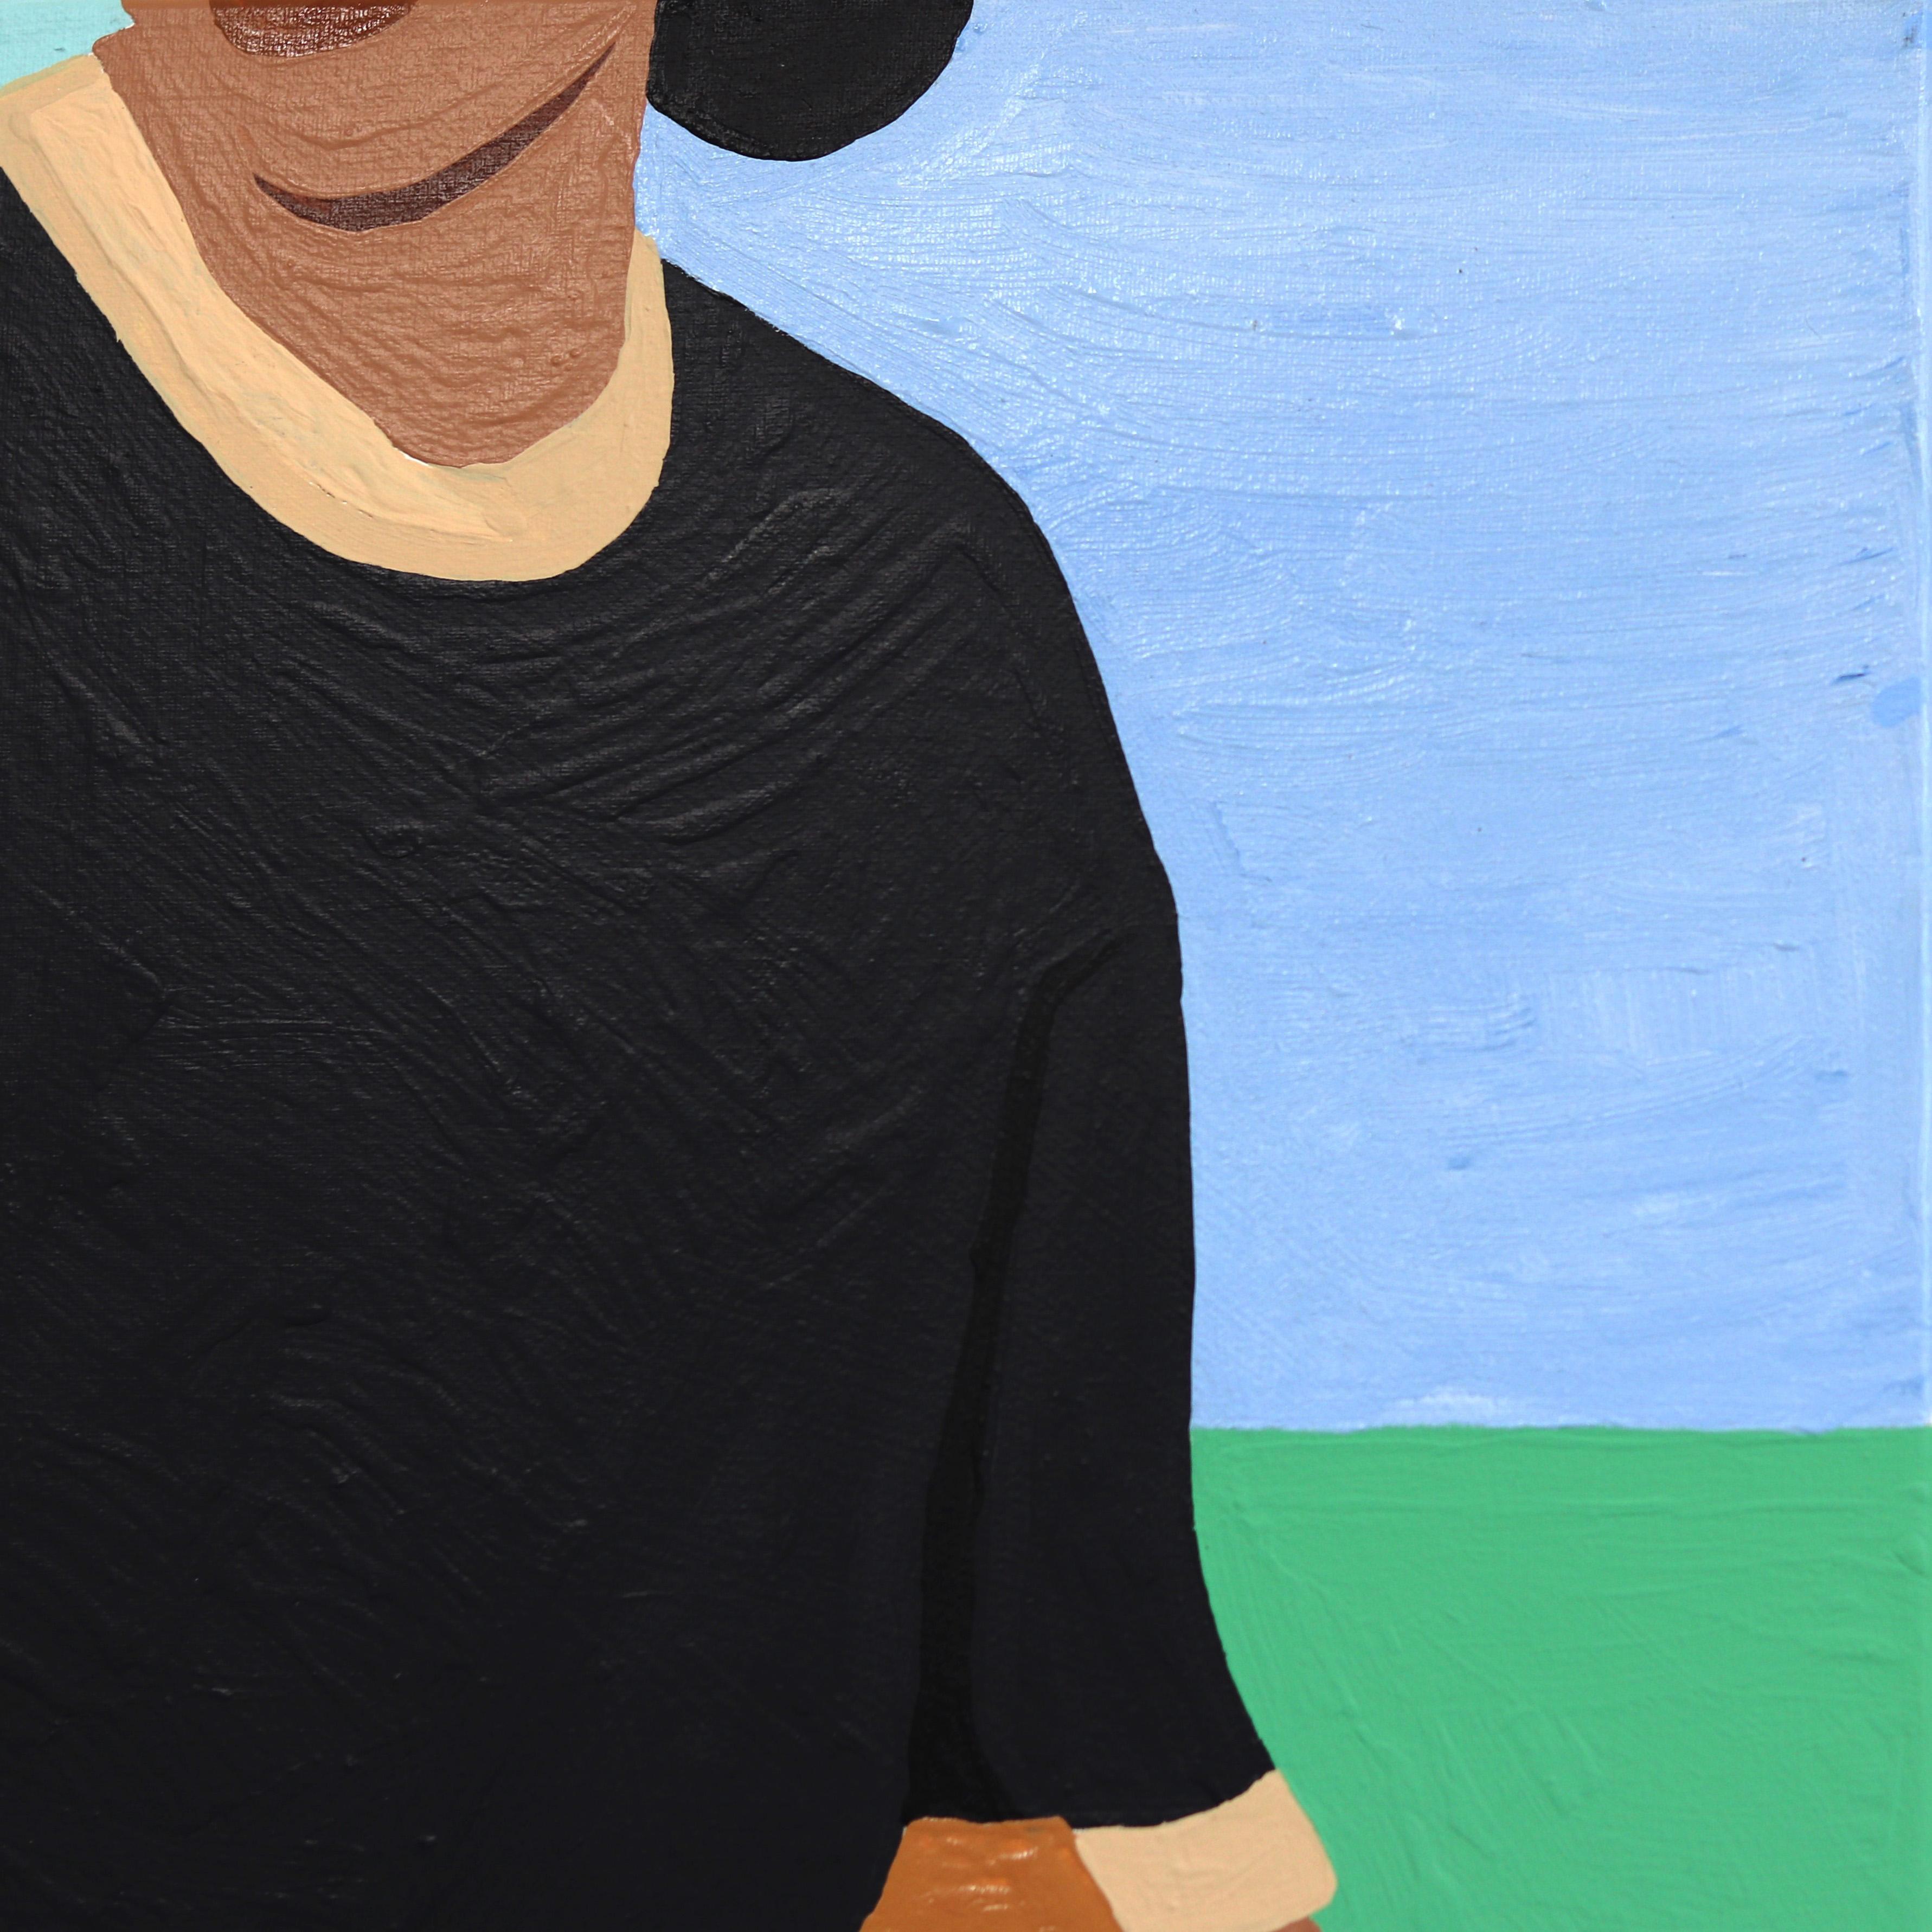 
Die Kunstwerke von Danny Brown stellen eine enge Verbindung zwischen ihm und den verschiedenen Gemeinschaften in Los Angeles her. Brown kombiniert Kunstgeschichte, Streetwear-Trends und Pop-Art-Symbolik zu einem unverwechselbaren Stil, der sich